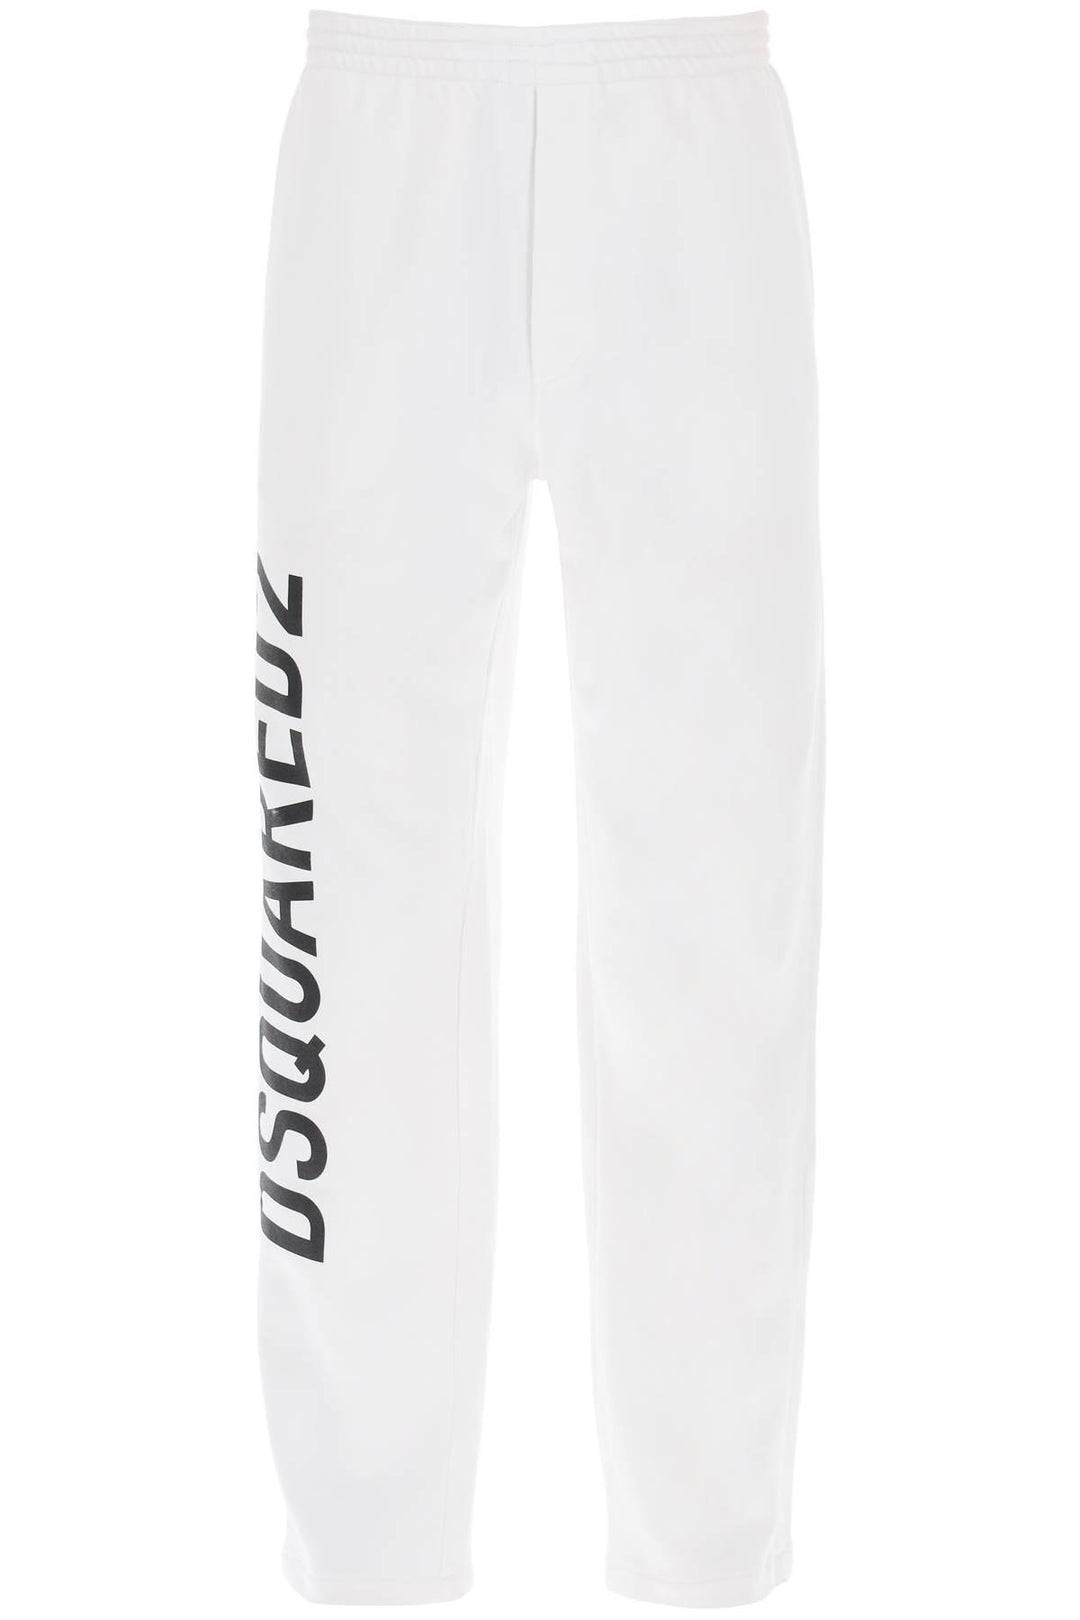 Dsquared2 Logo Print Sweatpants   Bianco